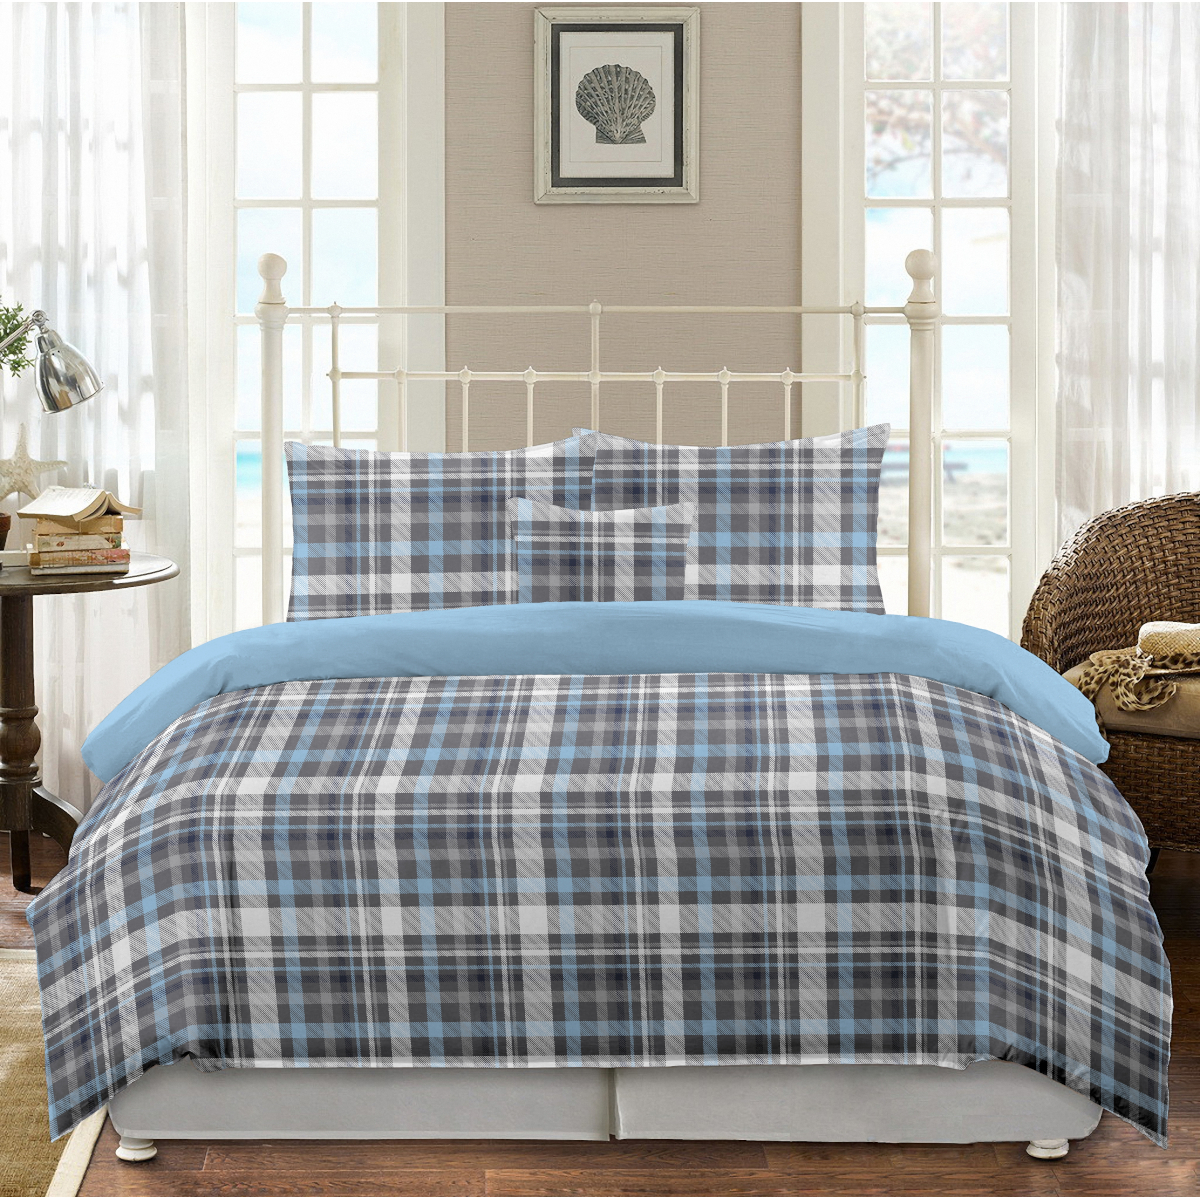 Комплект постельного белья двуспальный кинг сайз Gipfel Alan 42652 цена и фото